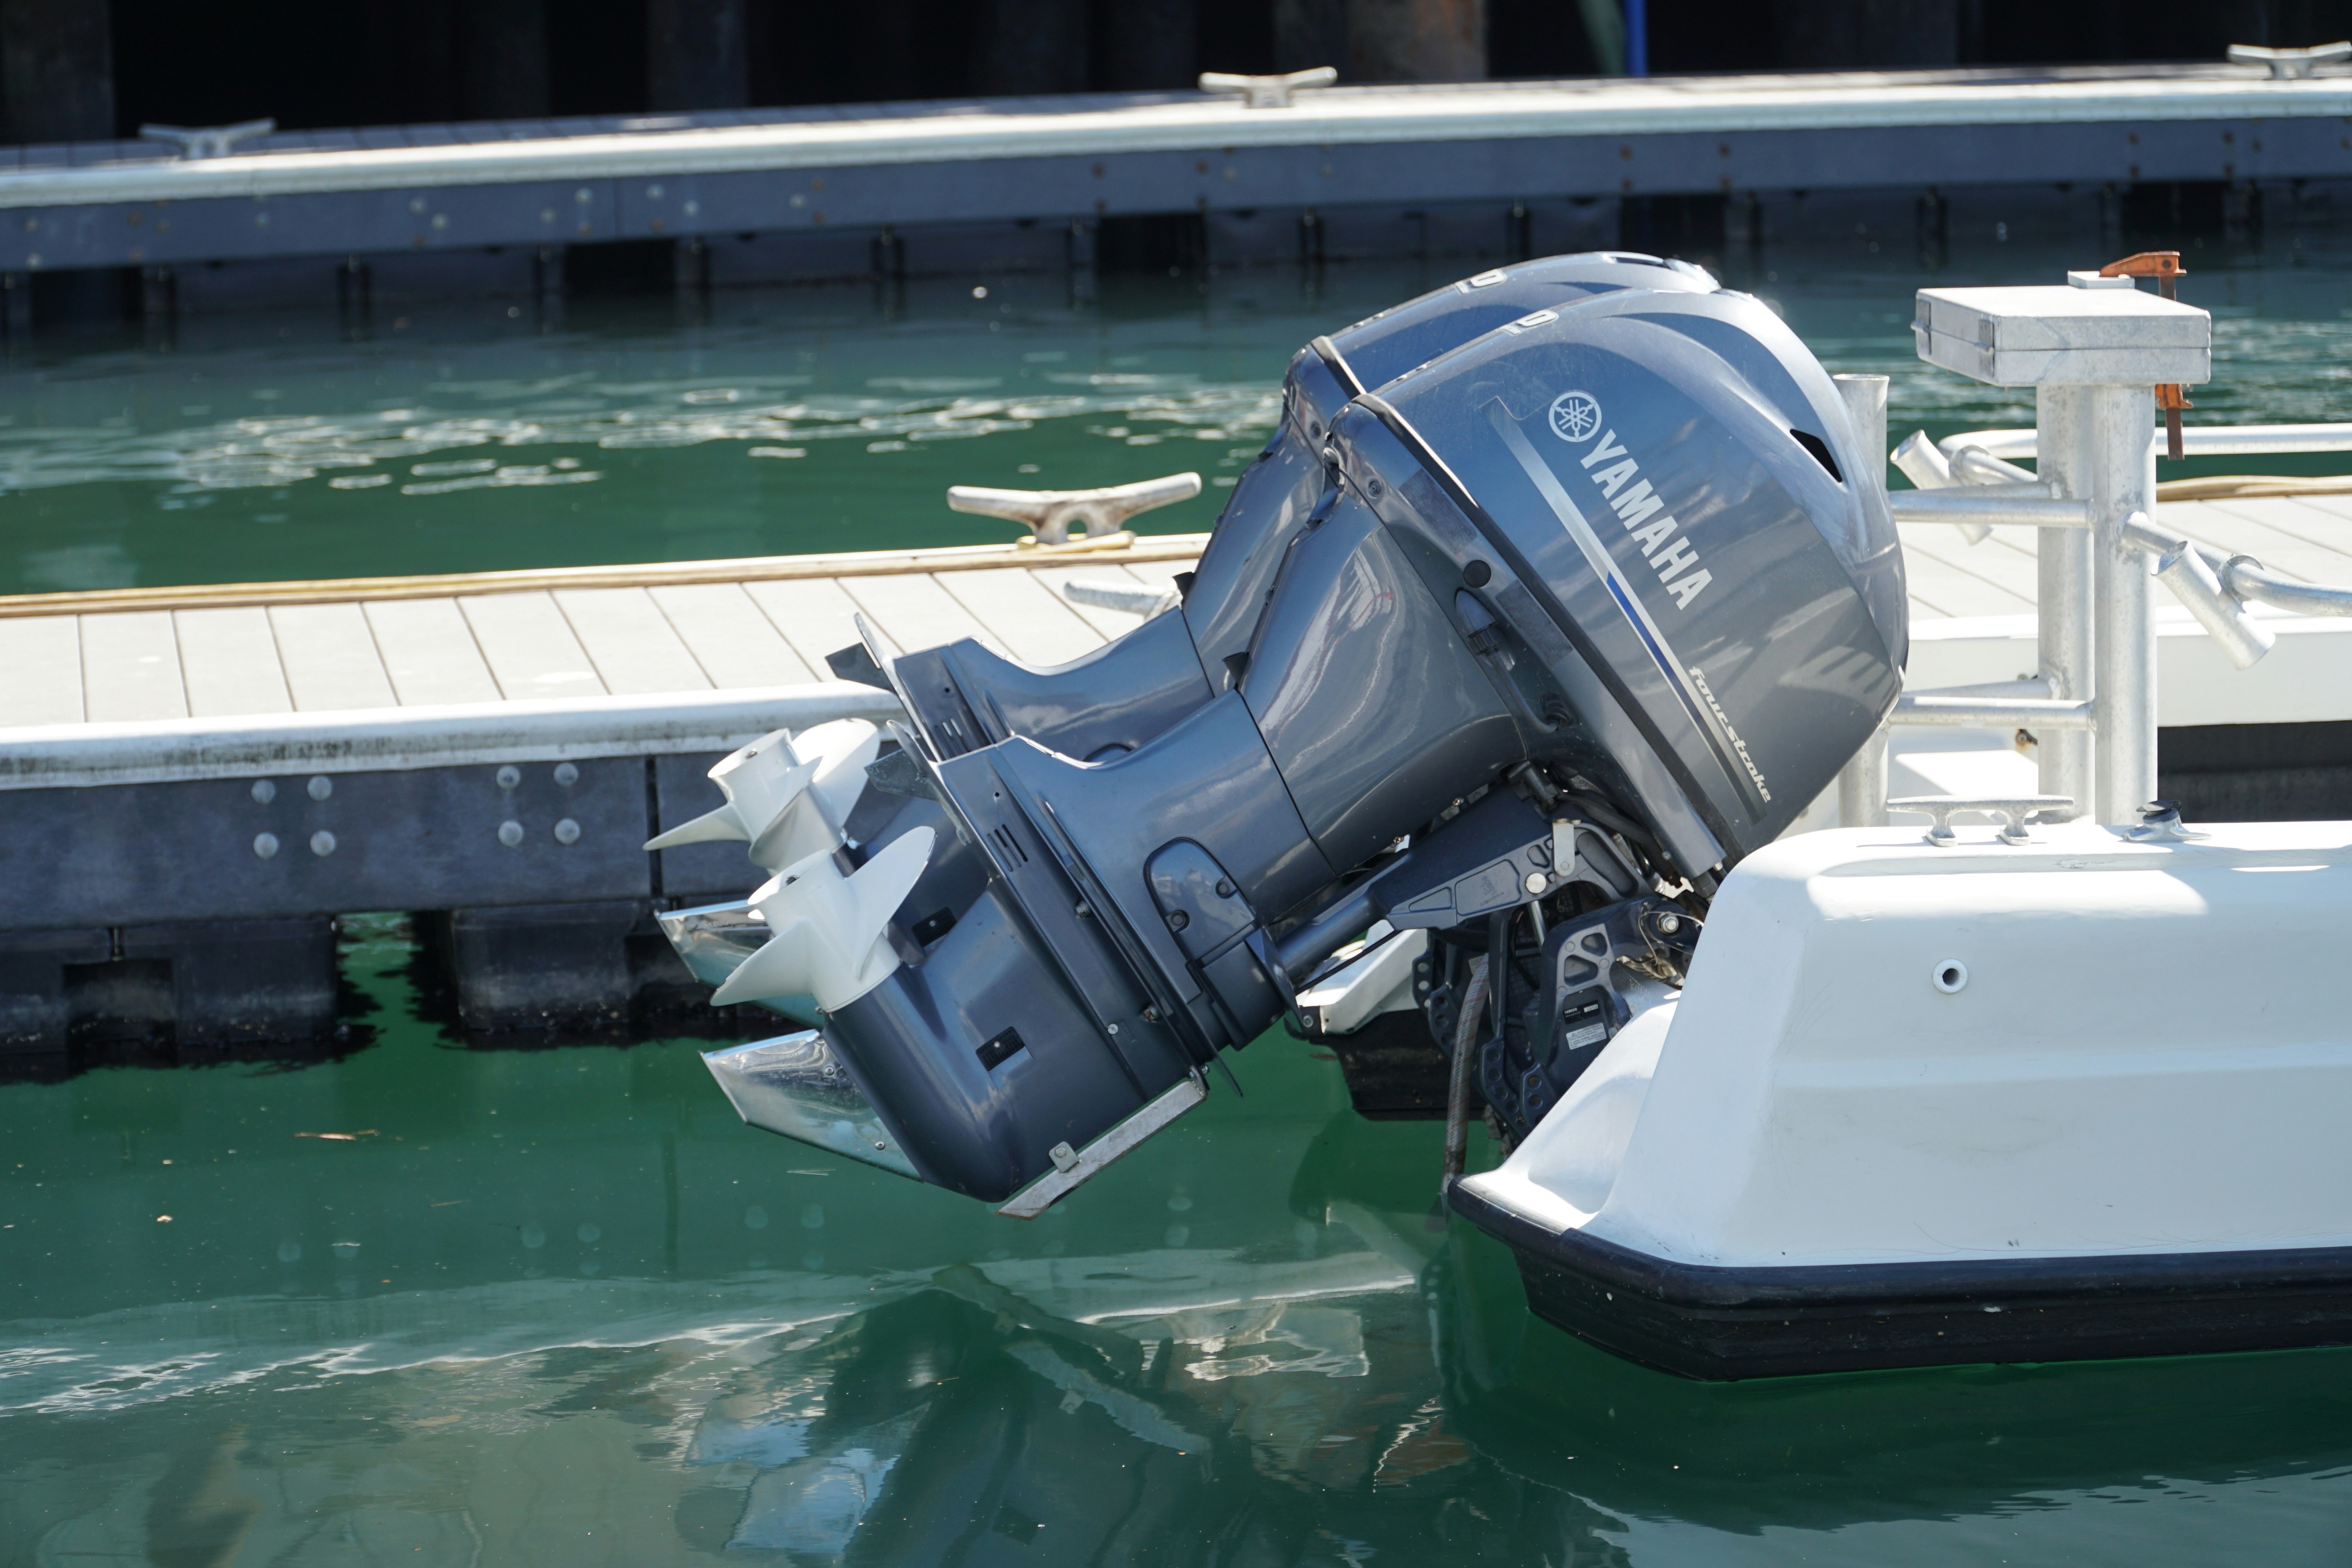 Δύο εξωλέμβιες μηχανές Yamaha στο πίσω μέρος ενός μικρού ψαράδικου σκάφους.